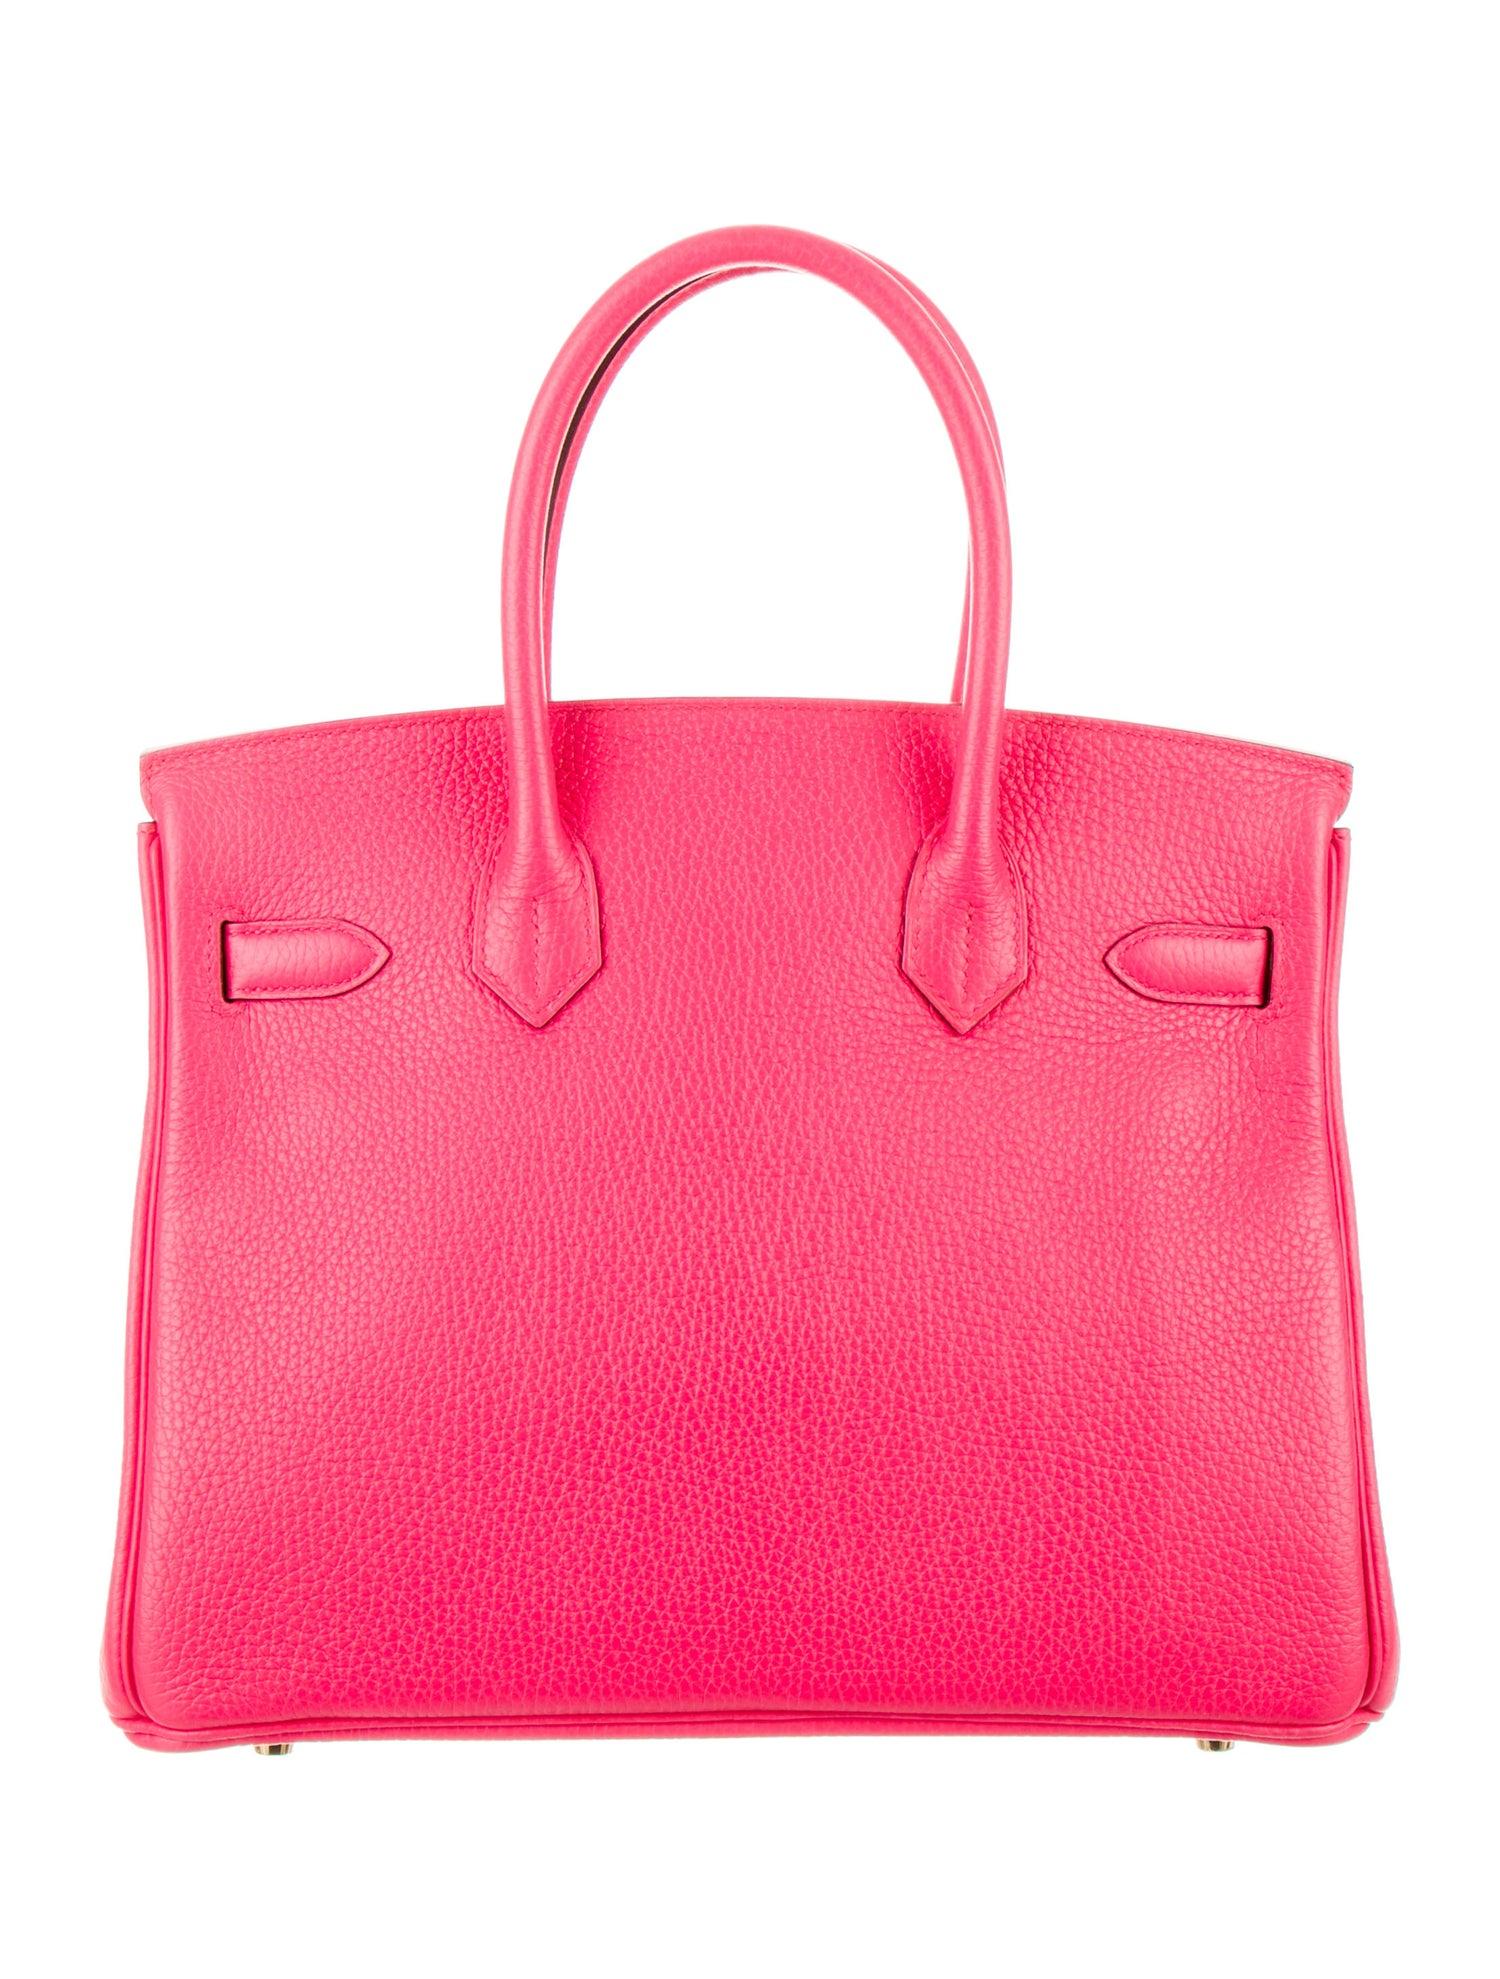 Women's Hermes NEW Birkin 30 Pink Leather Gold Top Handle Satchel Tote Bag 